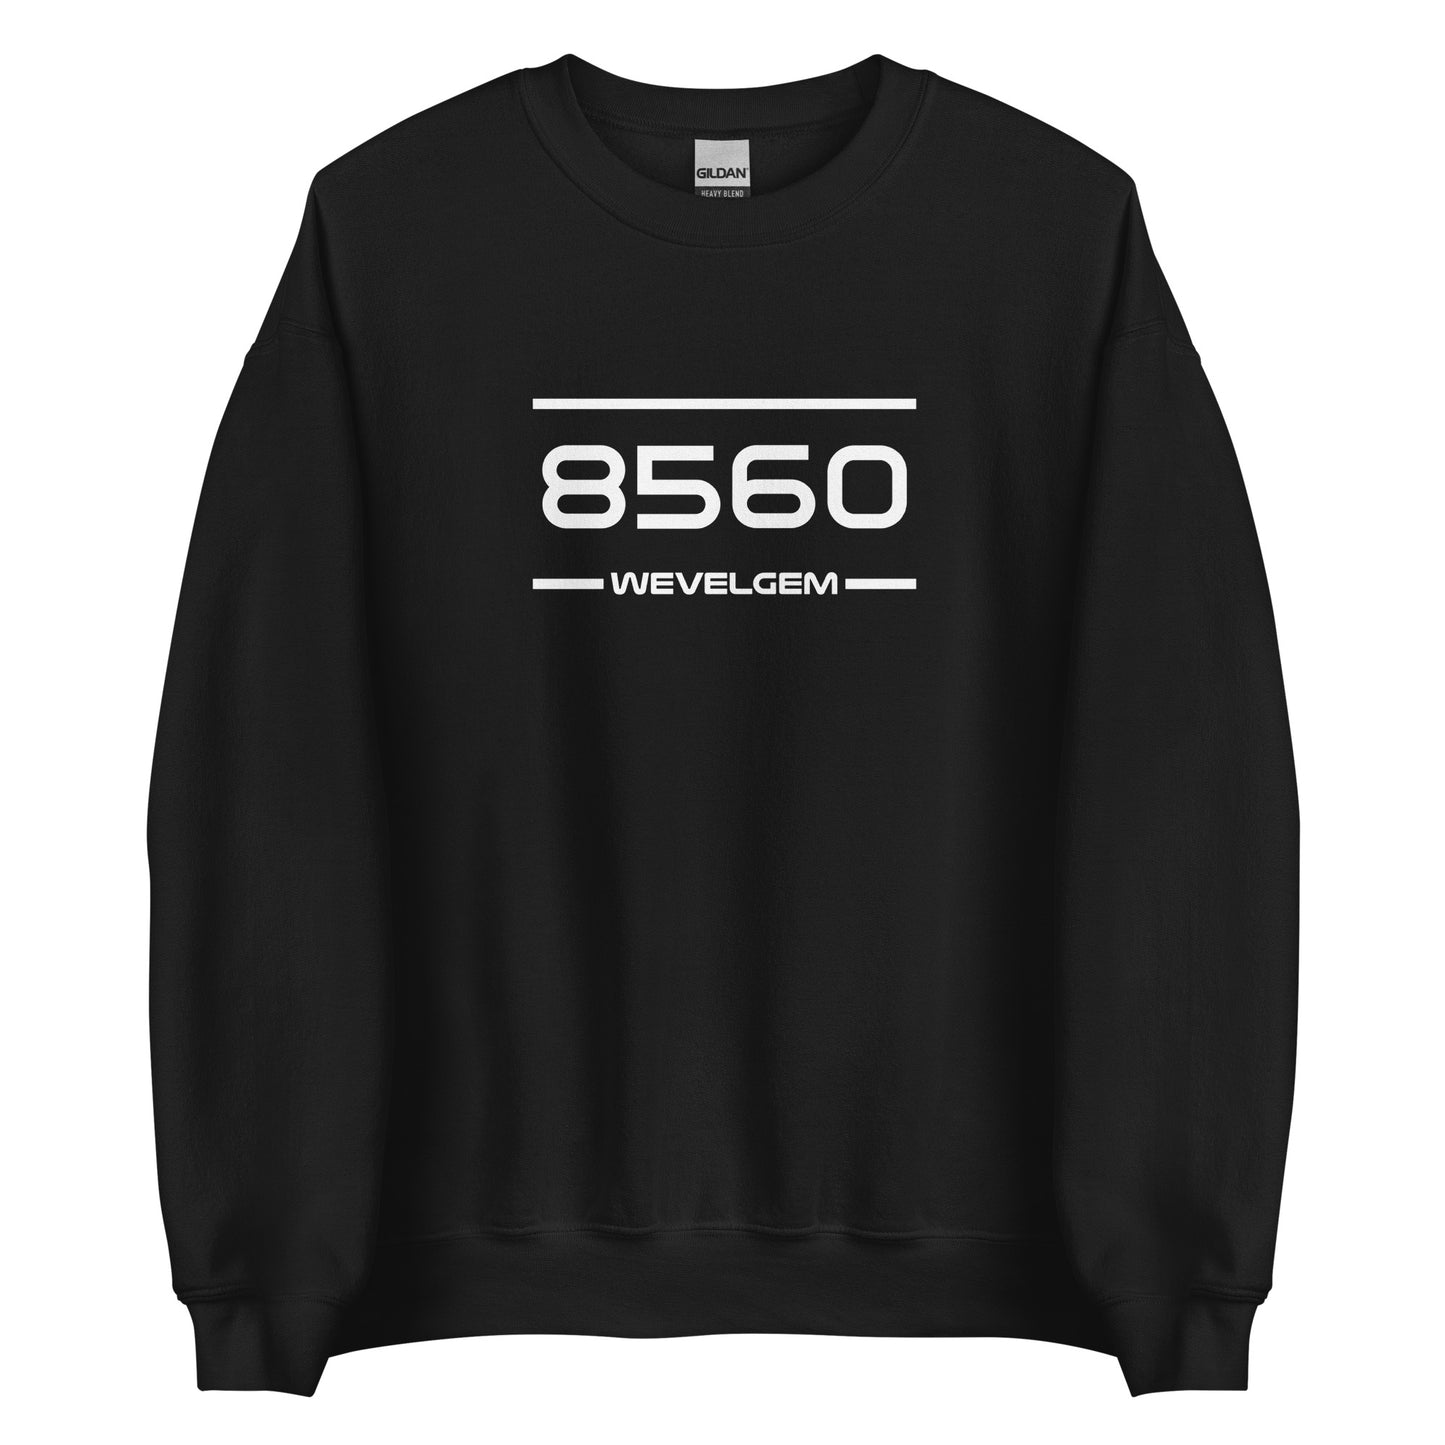 Sweater - 8560 - Wevelgem (M/V)